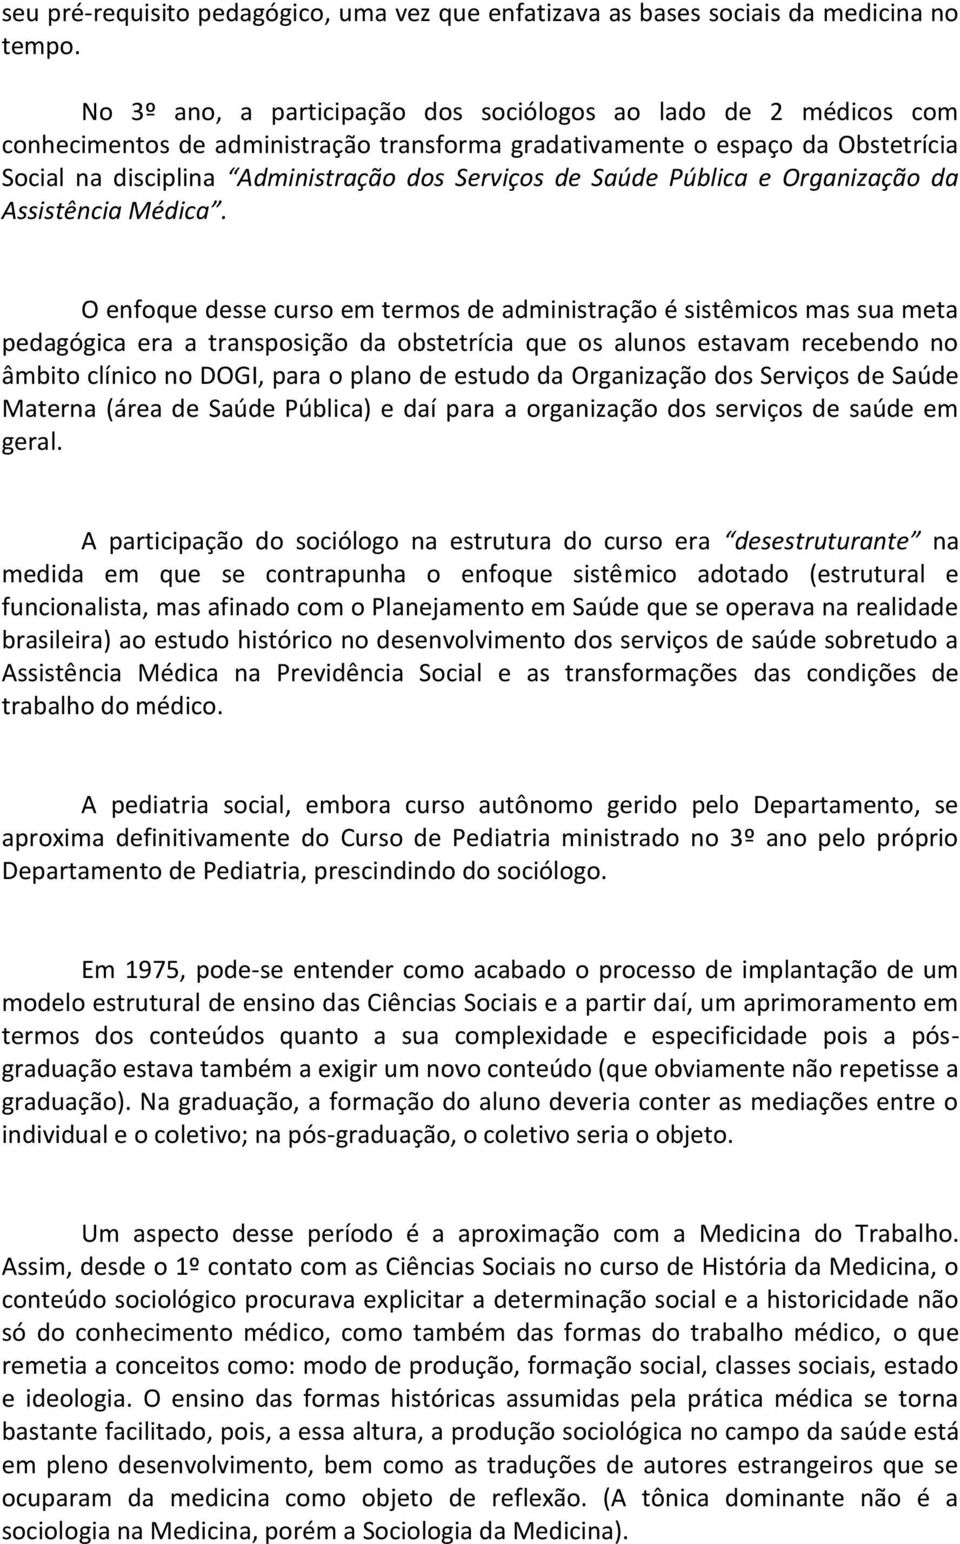 Saúde Pública e Organização da Assistência Médica.